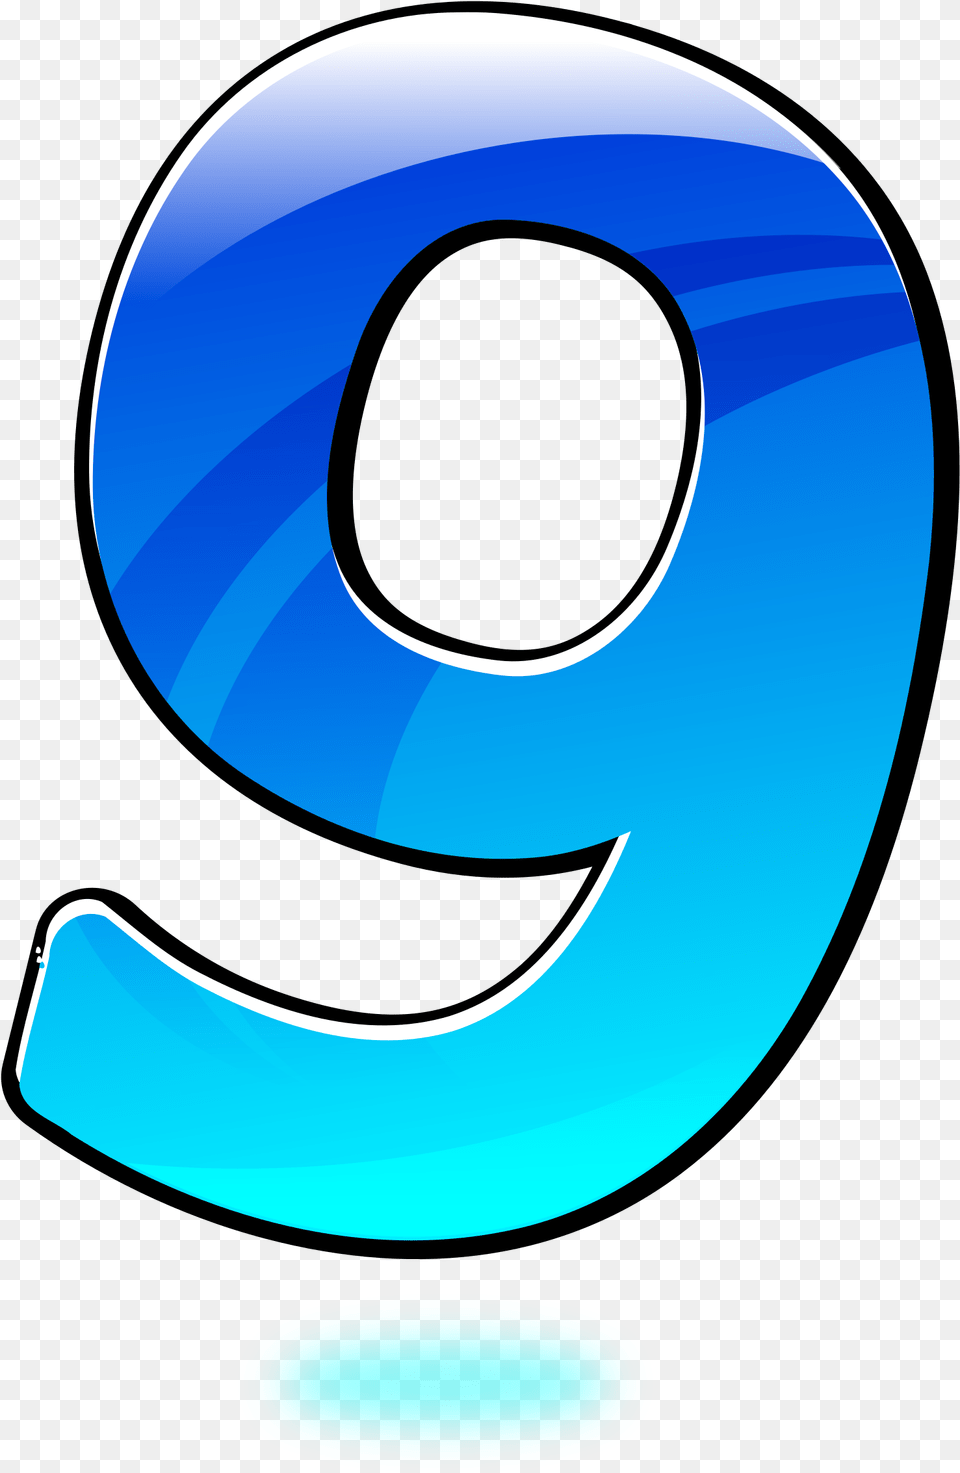 Nine, Text, Symbol, Number Png Image